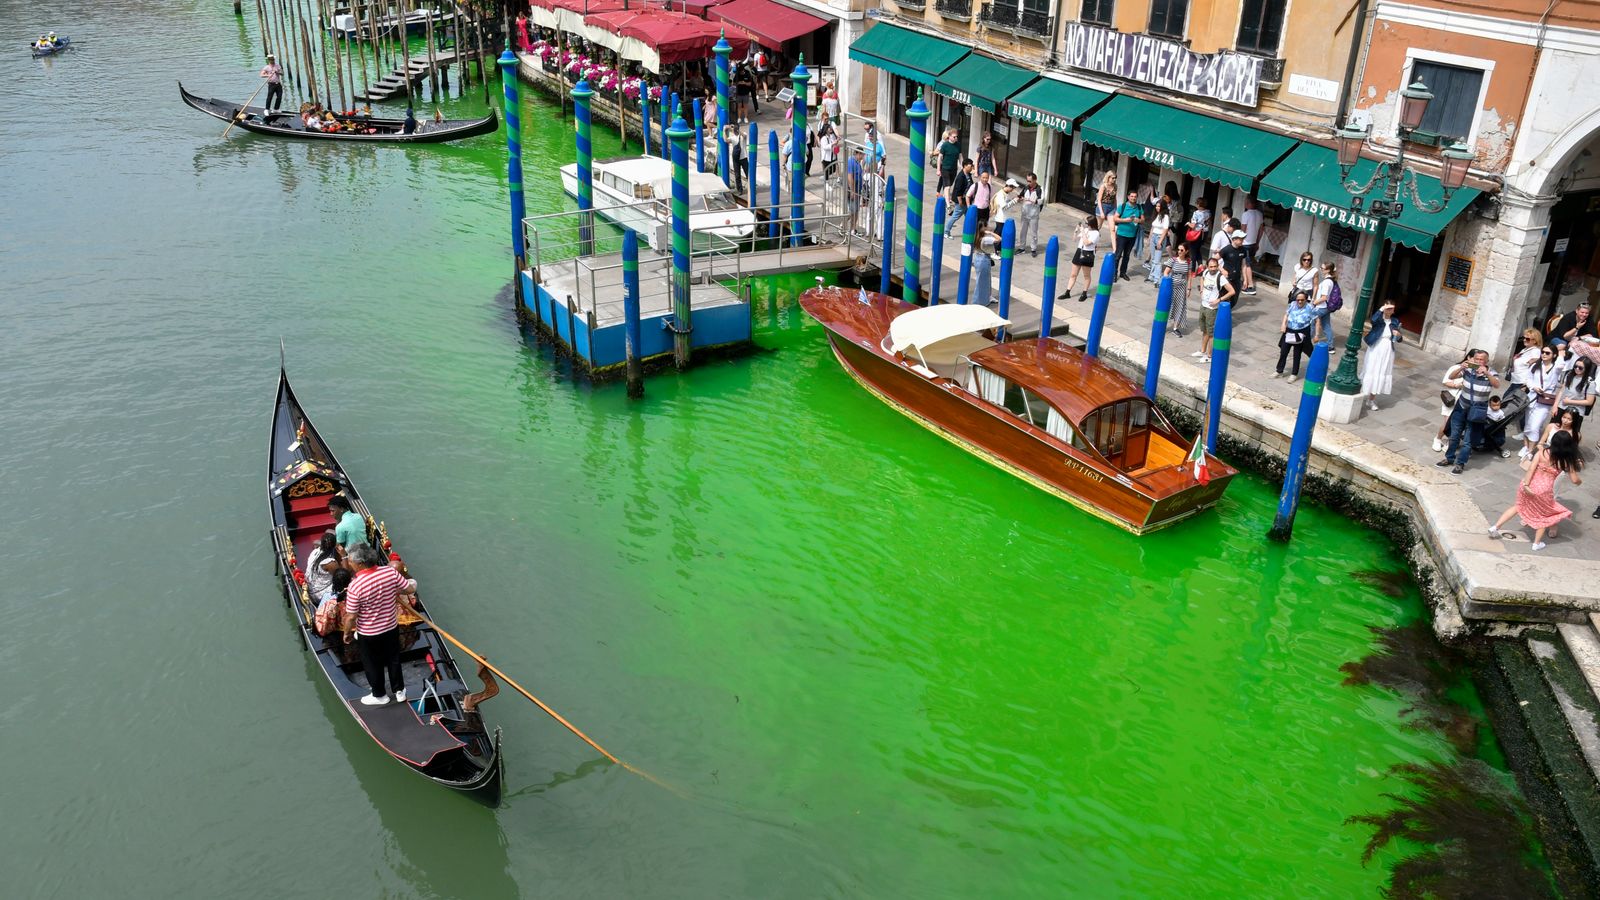 La polizia veneziana indaga sul liquido verde brillante in Canal Grande |  notizie dal mondo